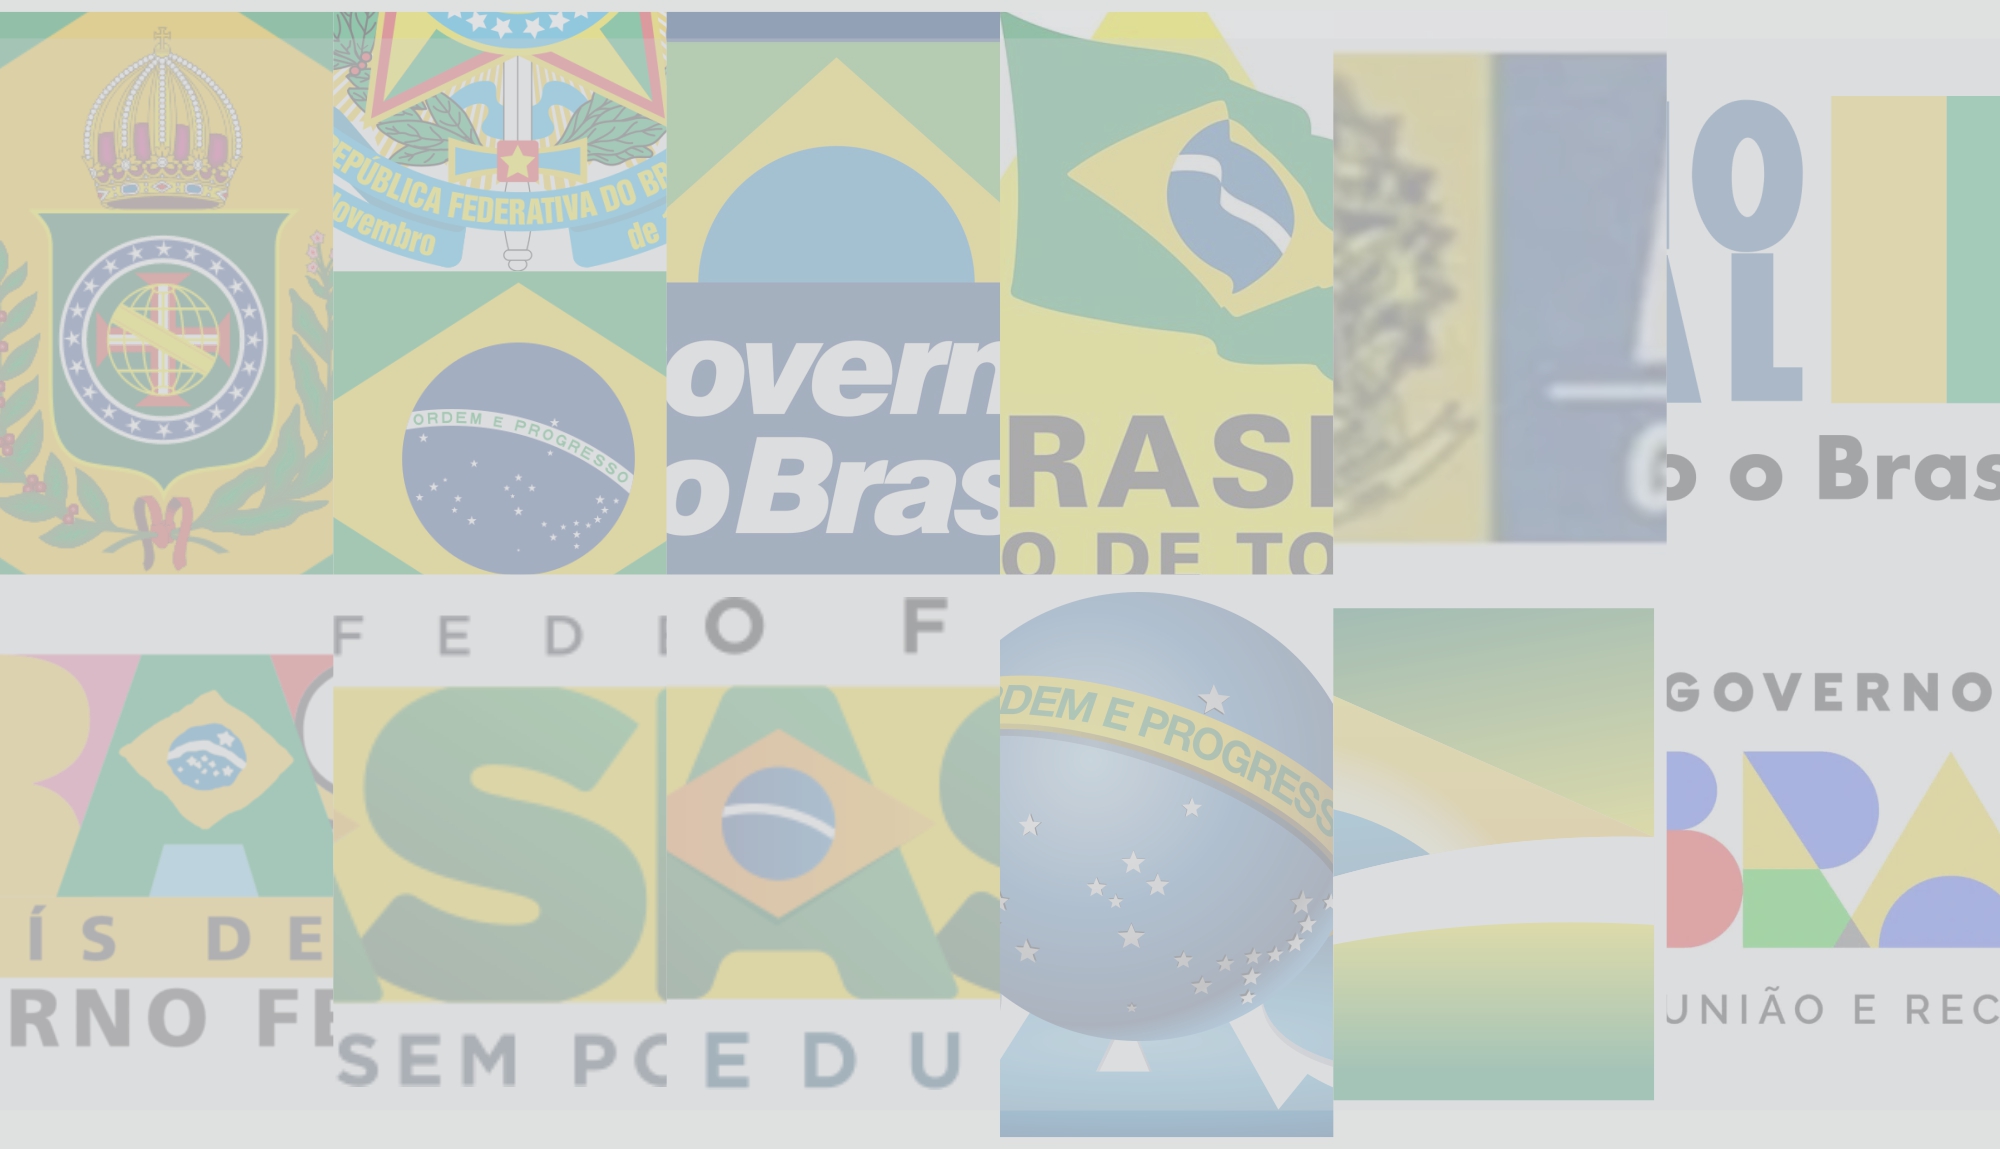 Jogo de dominó sobre uma bandeira verde amarela e azul, colo brasileiro  [download] - Designi